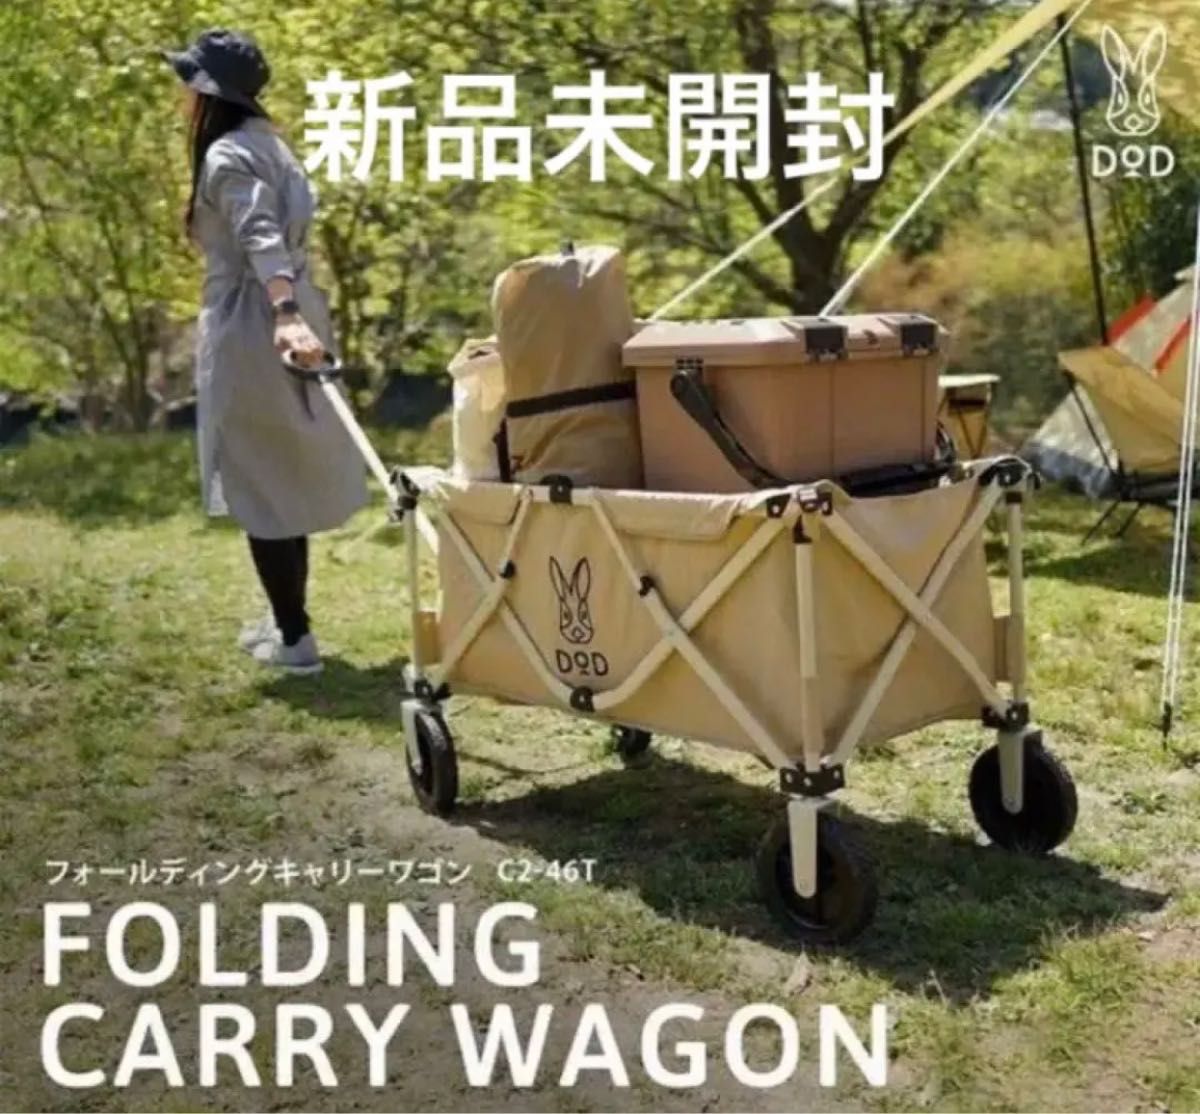 DOD フォールディング キャリーワゴン Folding CARRY WAGON ベージュ